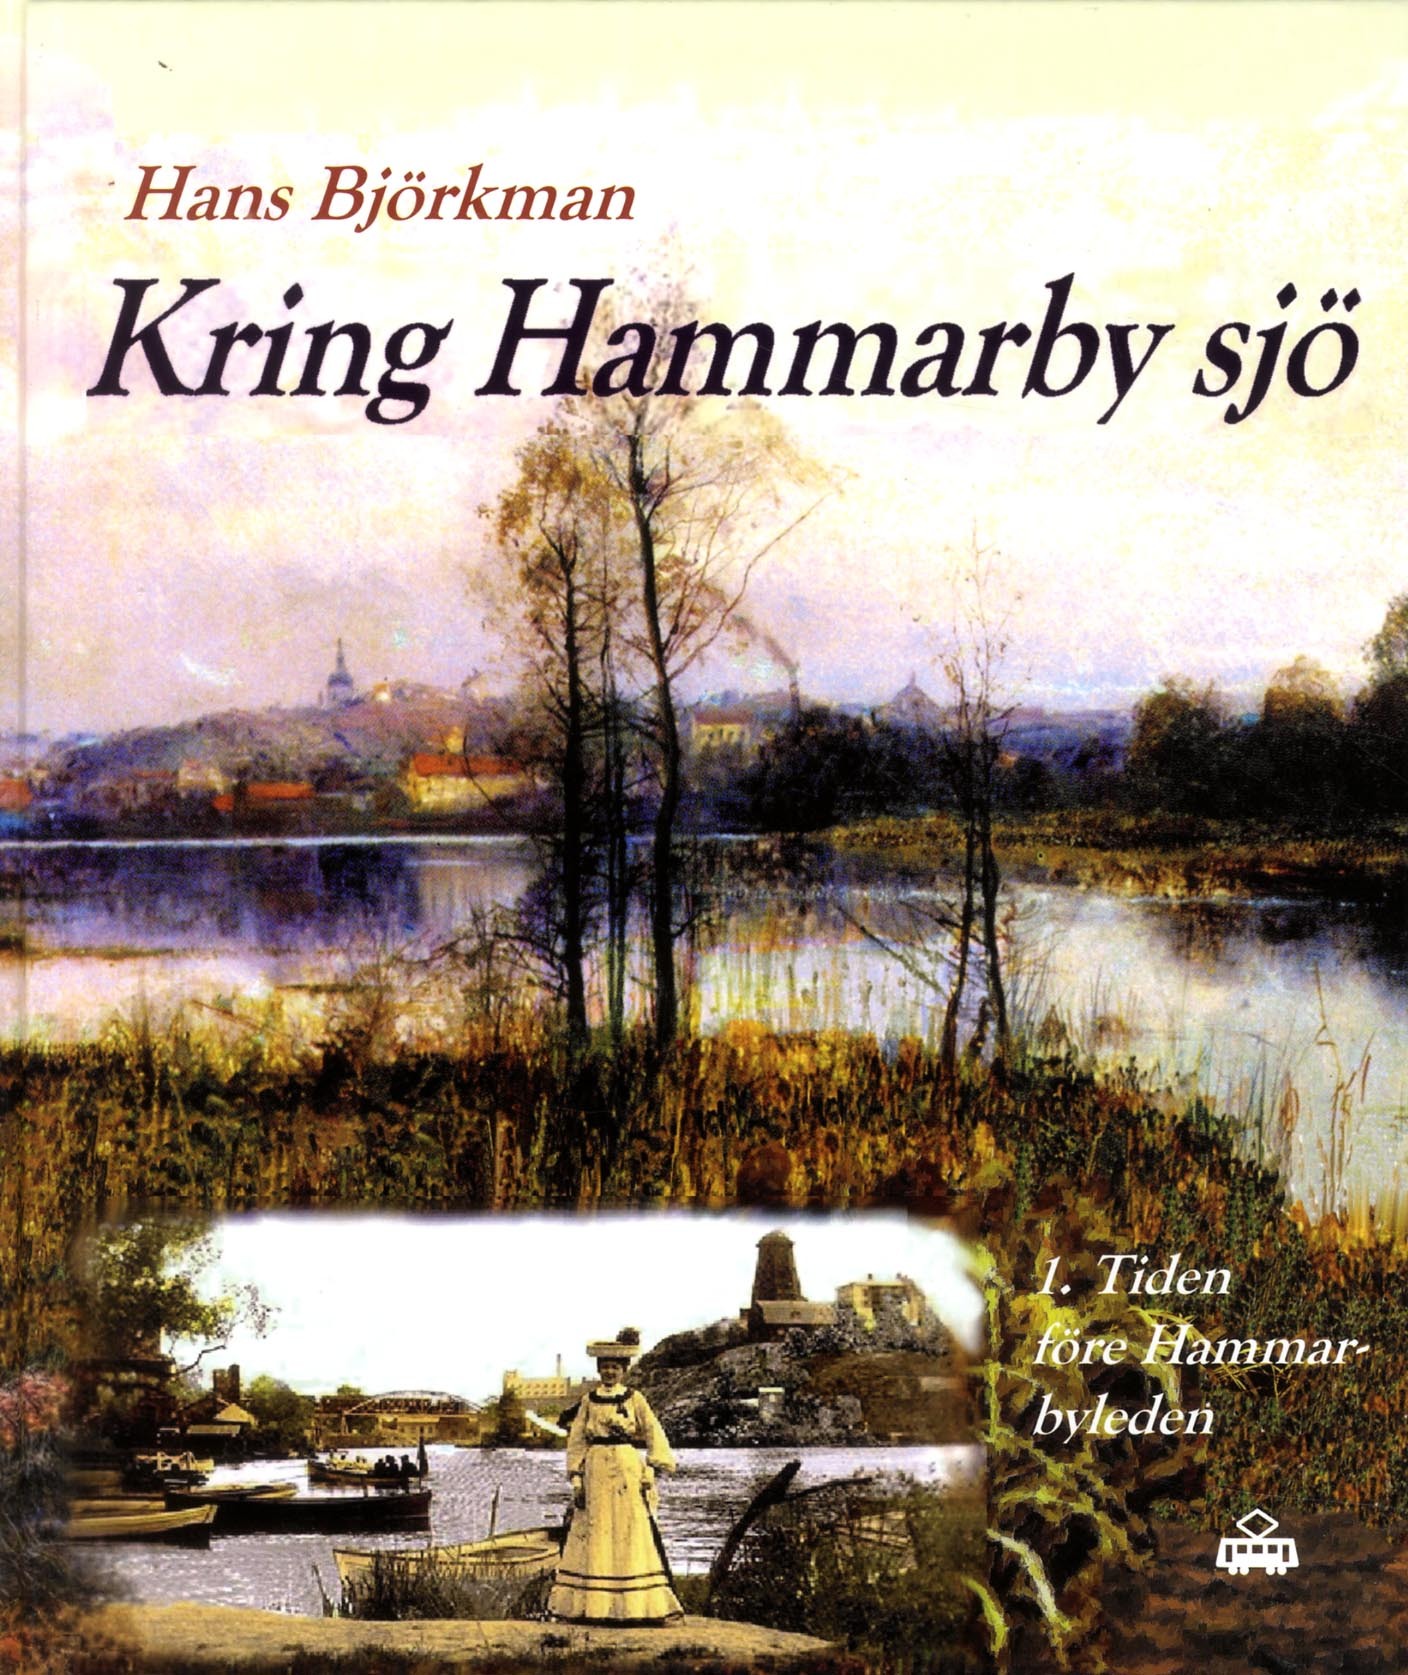 Ny historiebok om livet kring Hammarby sjö